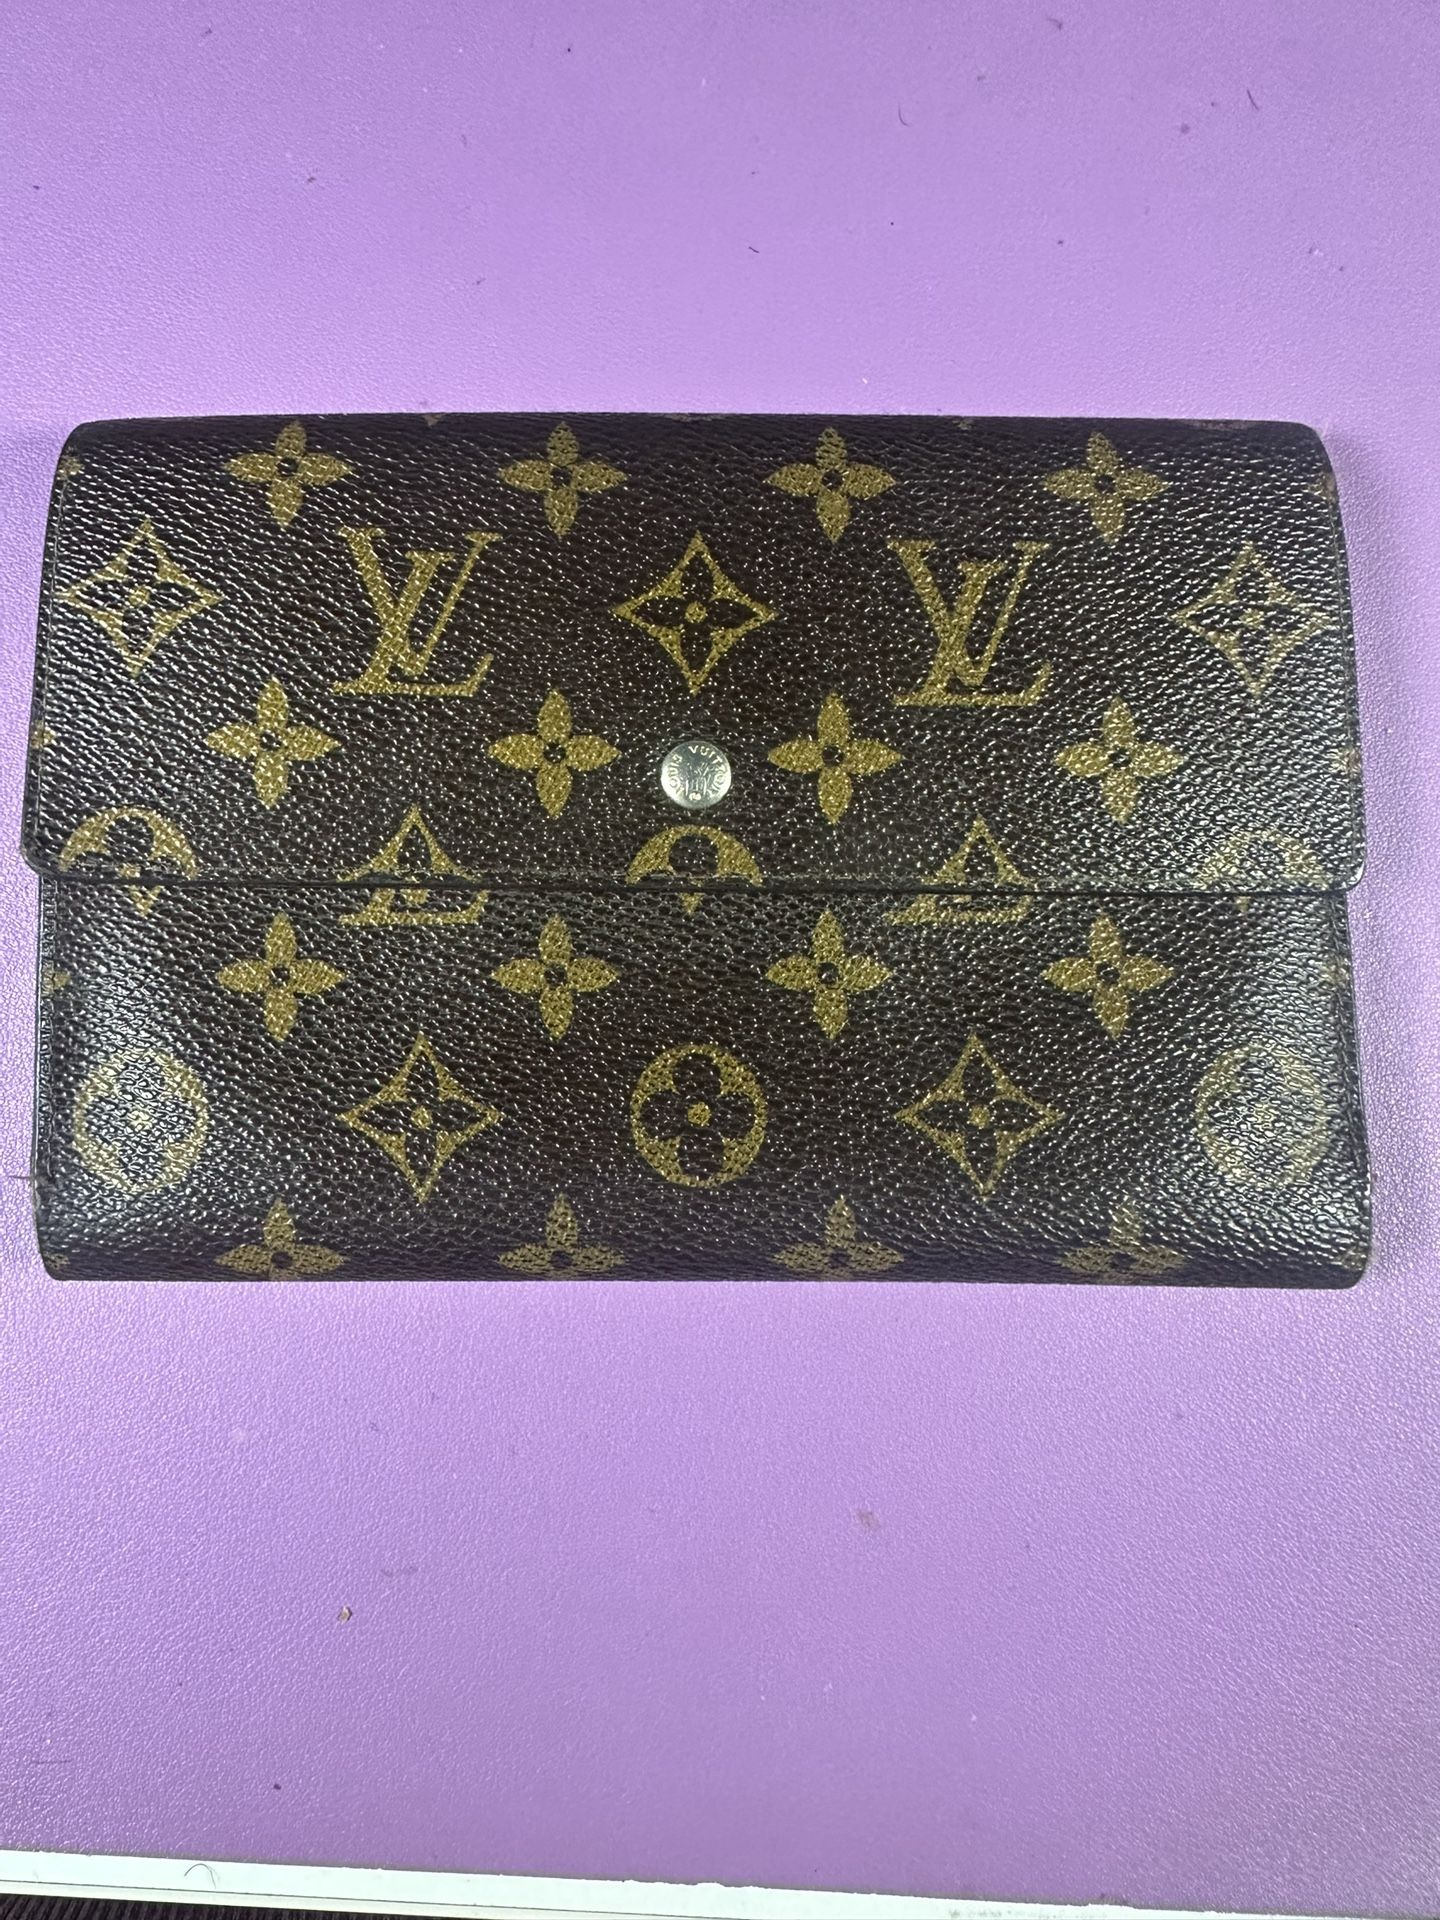 Vintage Louis Vuitton Wallet 